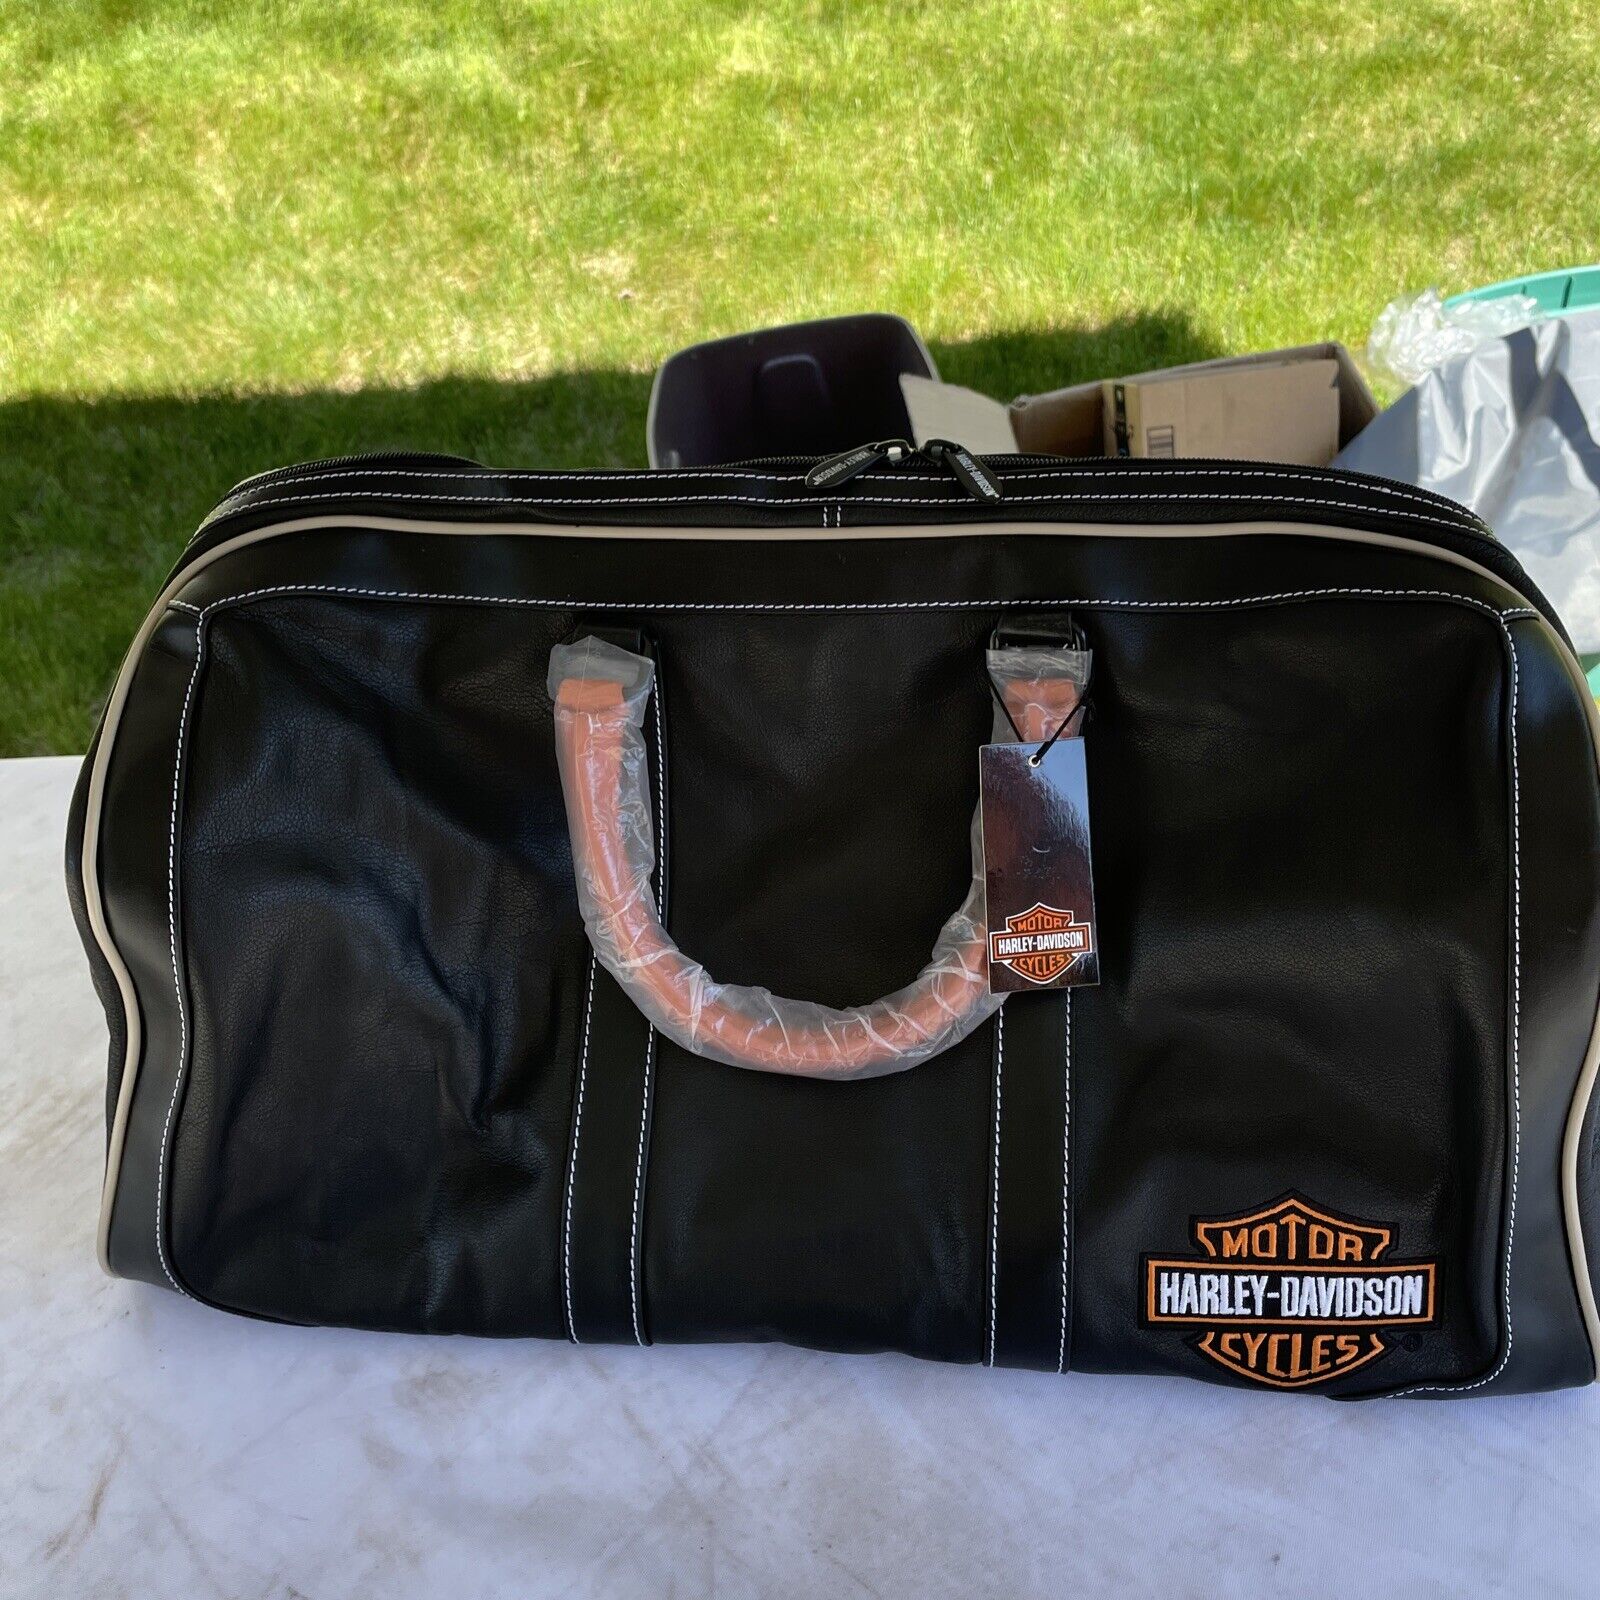 Harley Davidson Leather Travel Bag